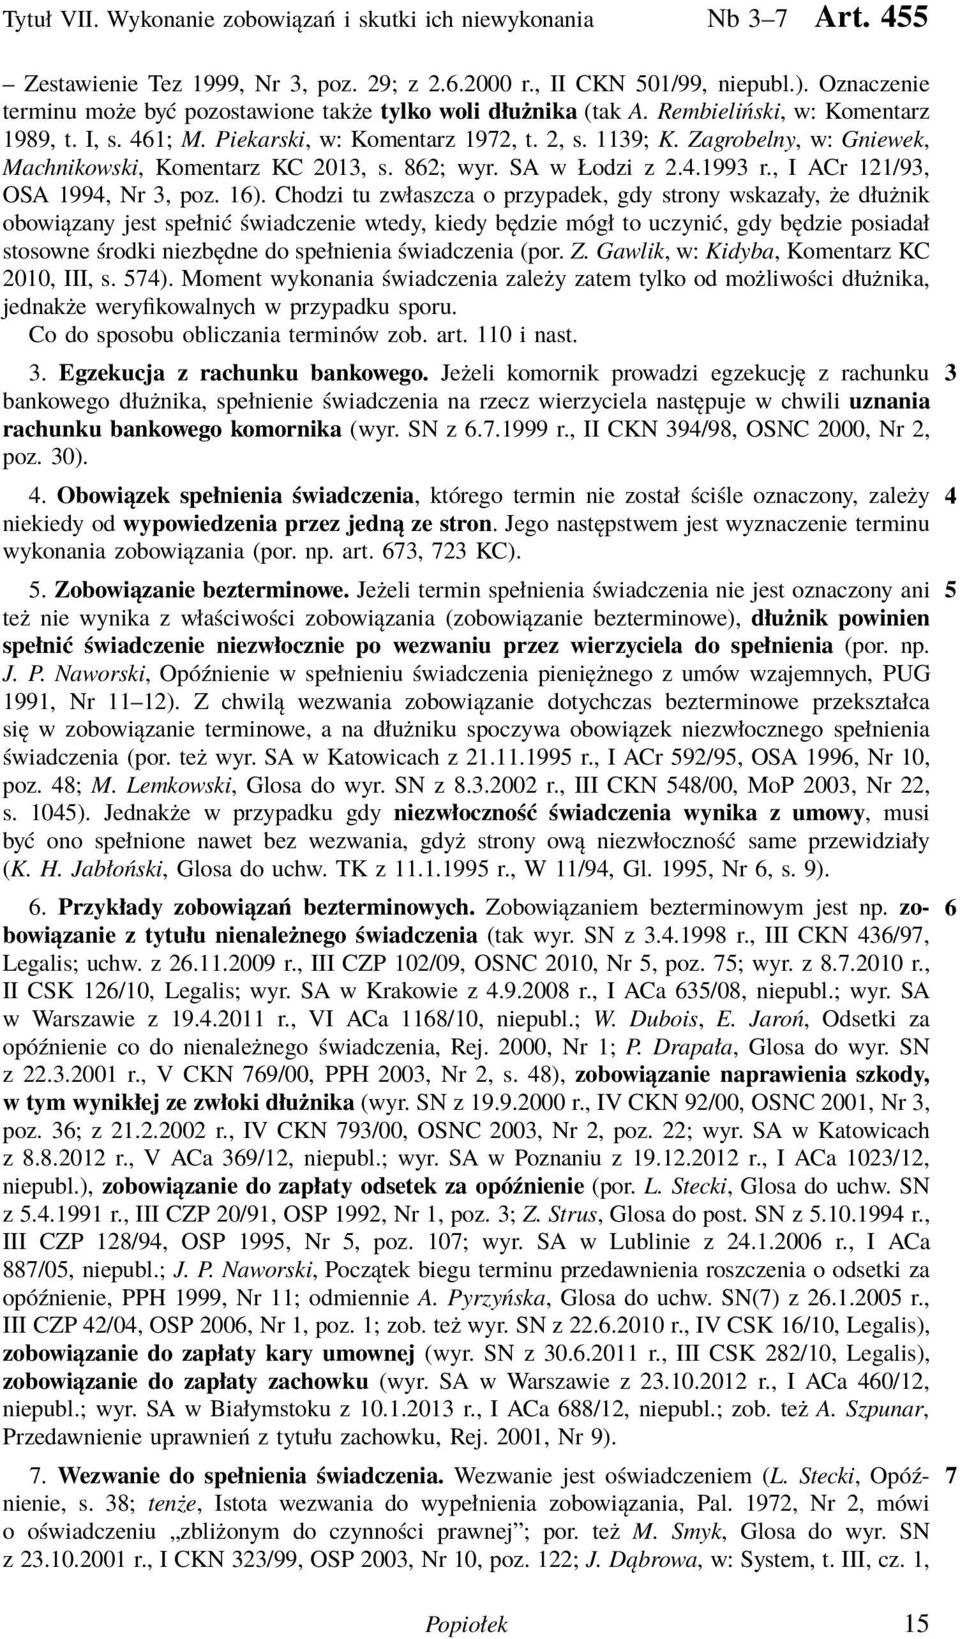 Zagrobelny, w:gniewek, Machnikowski, Komentarz KC 2013, s. 862; wyr. SA w Łodzi z 2.4.1993 r., I ACr 121/93, OSA 1994, Nr 3, poz. 16).